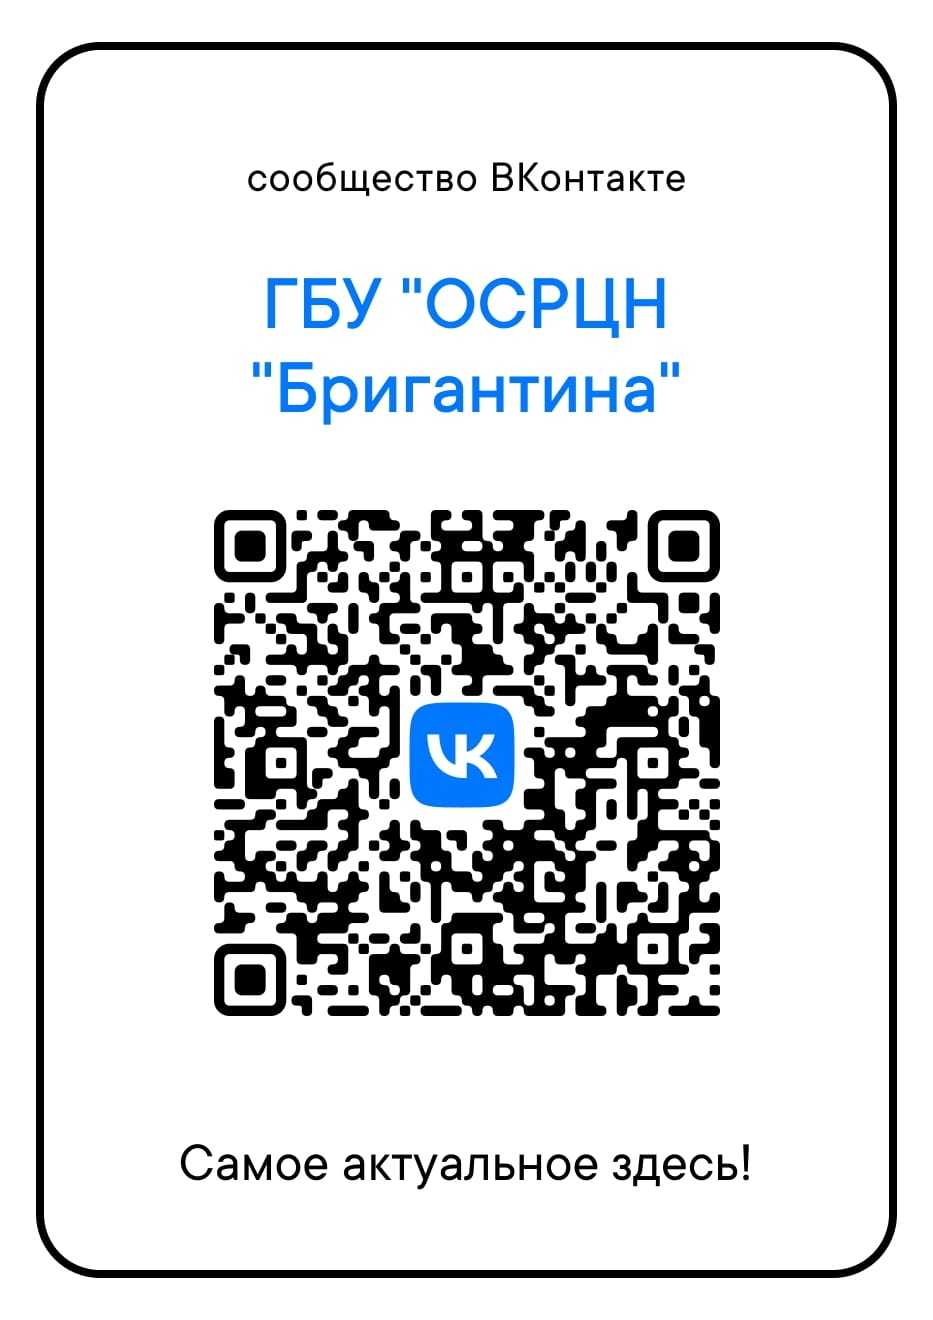 Подписывайтесь на наше сообщество ВКонтакте!